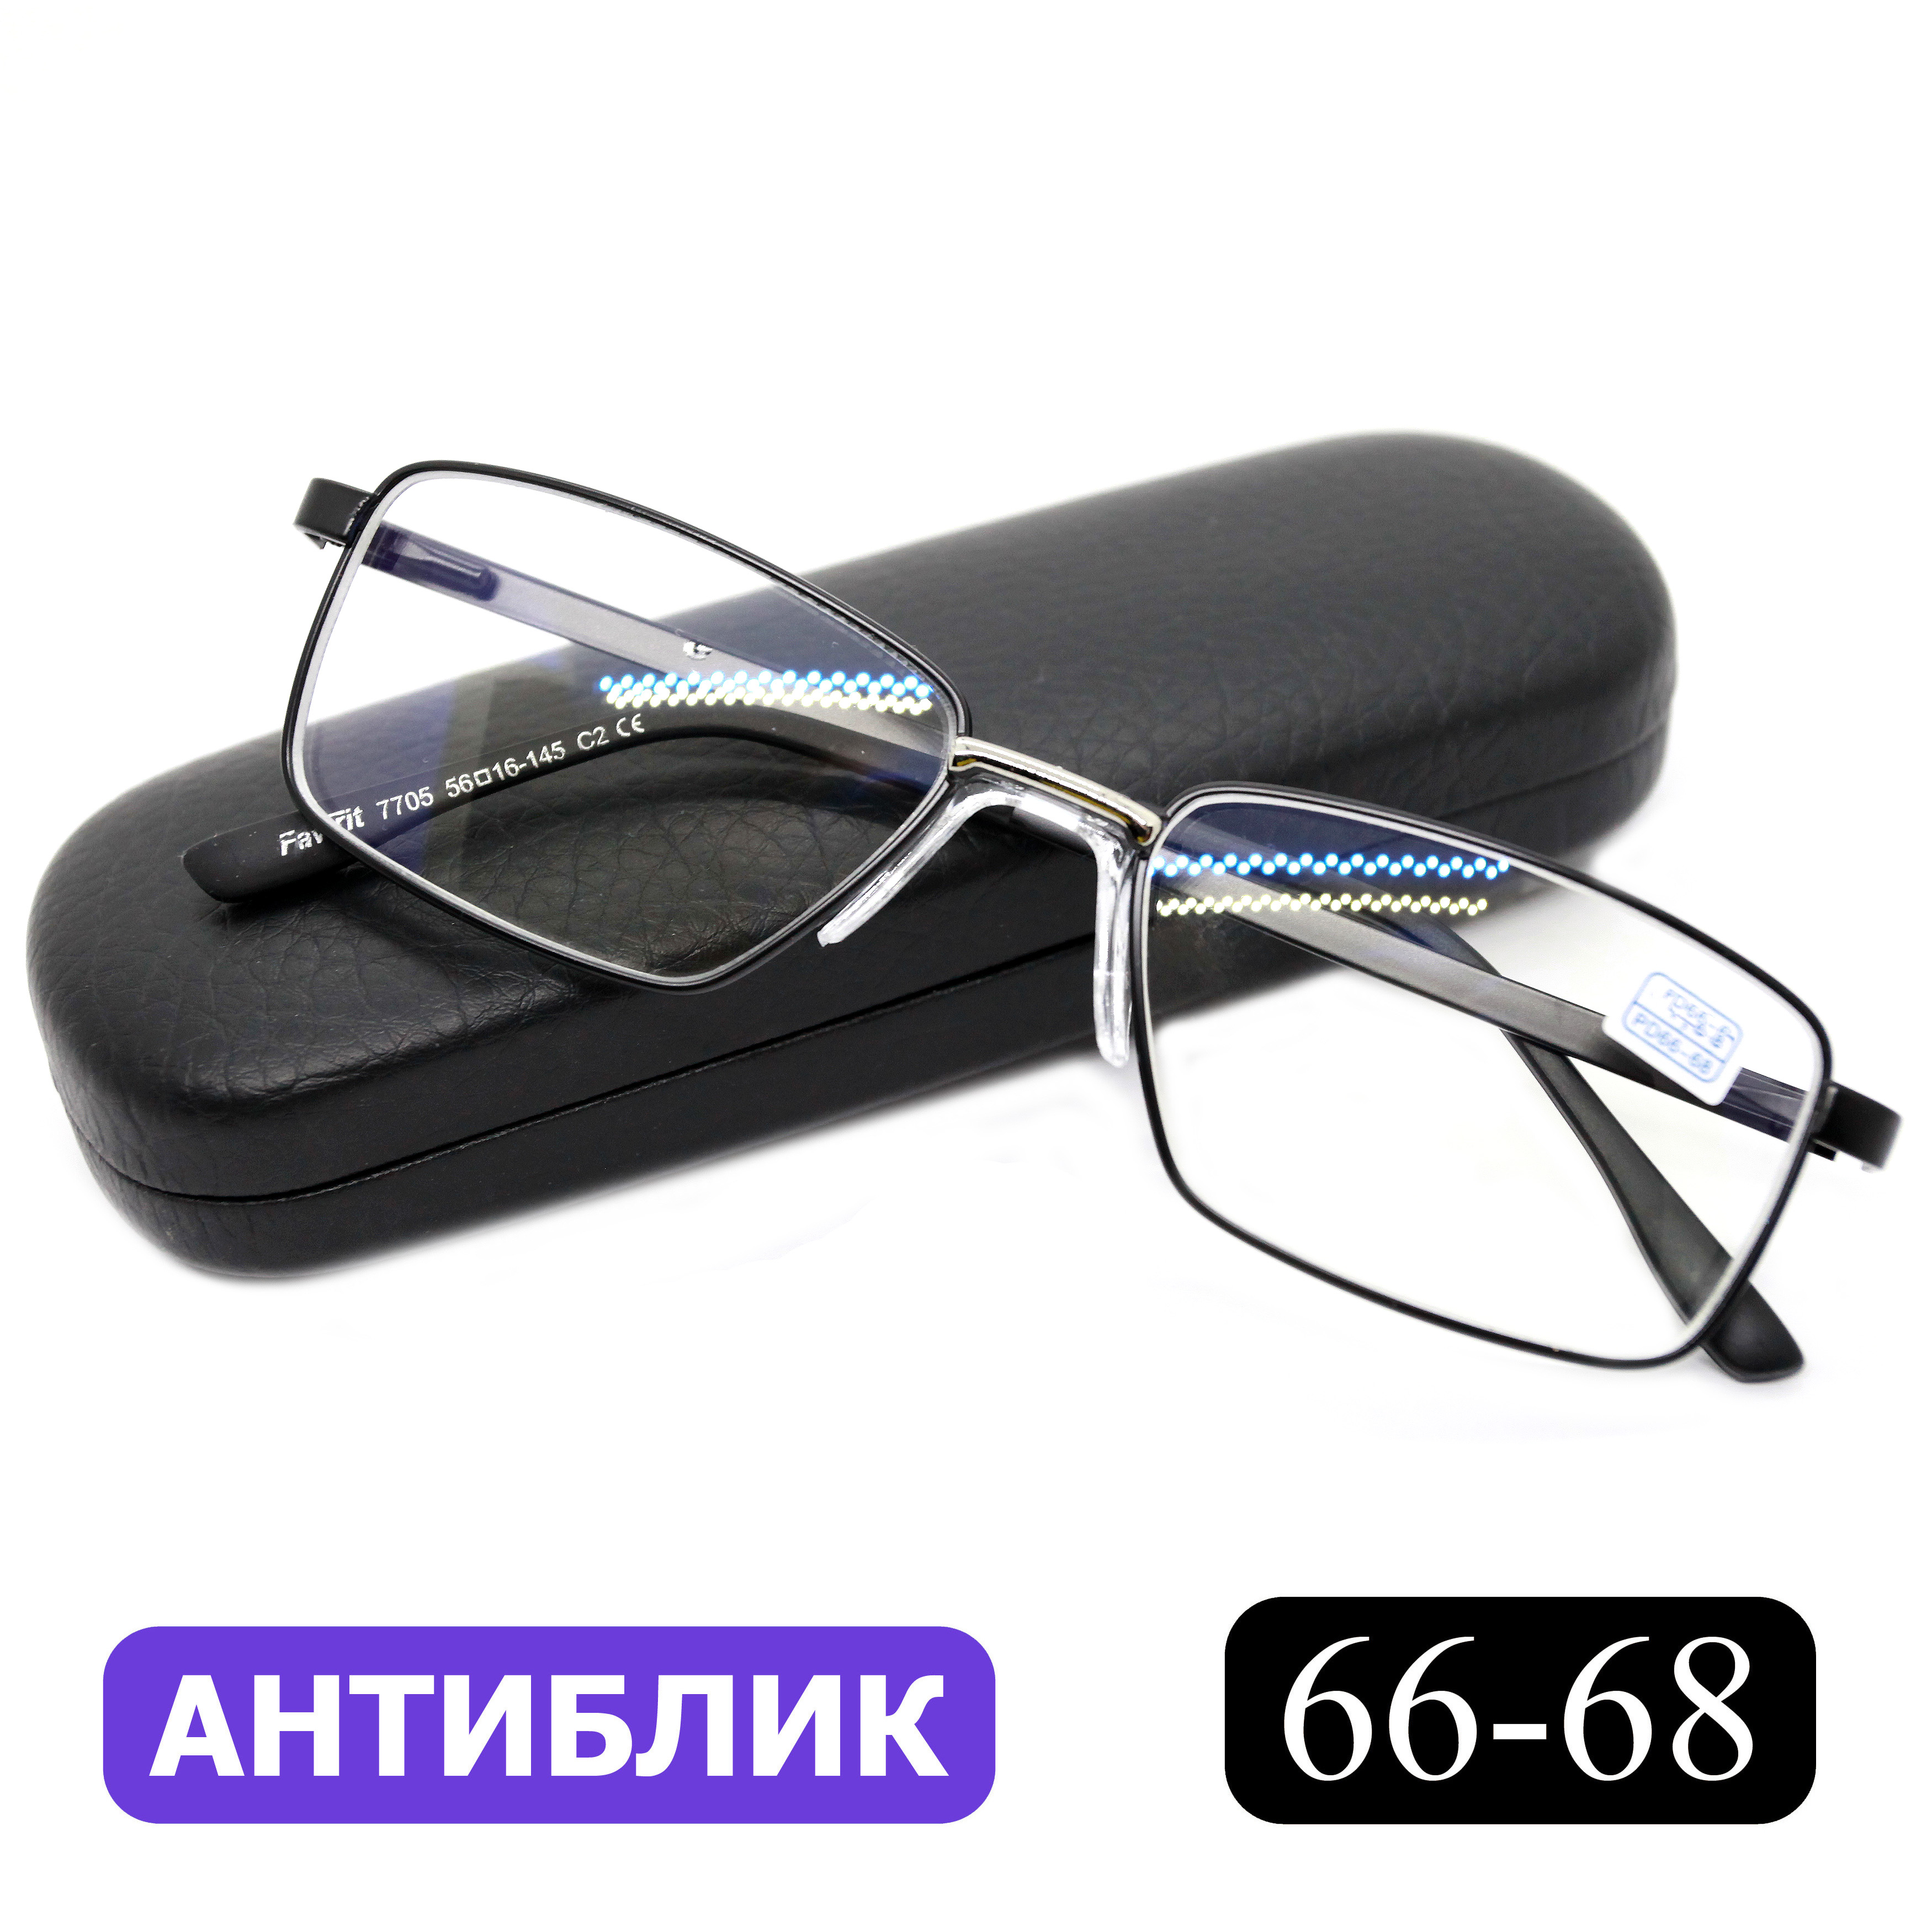 Готовые очки Favarit 7705 +6,00, c футляром, с антибликом, черный, РЦ 66-68